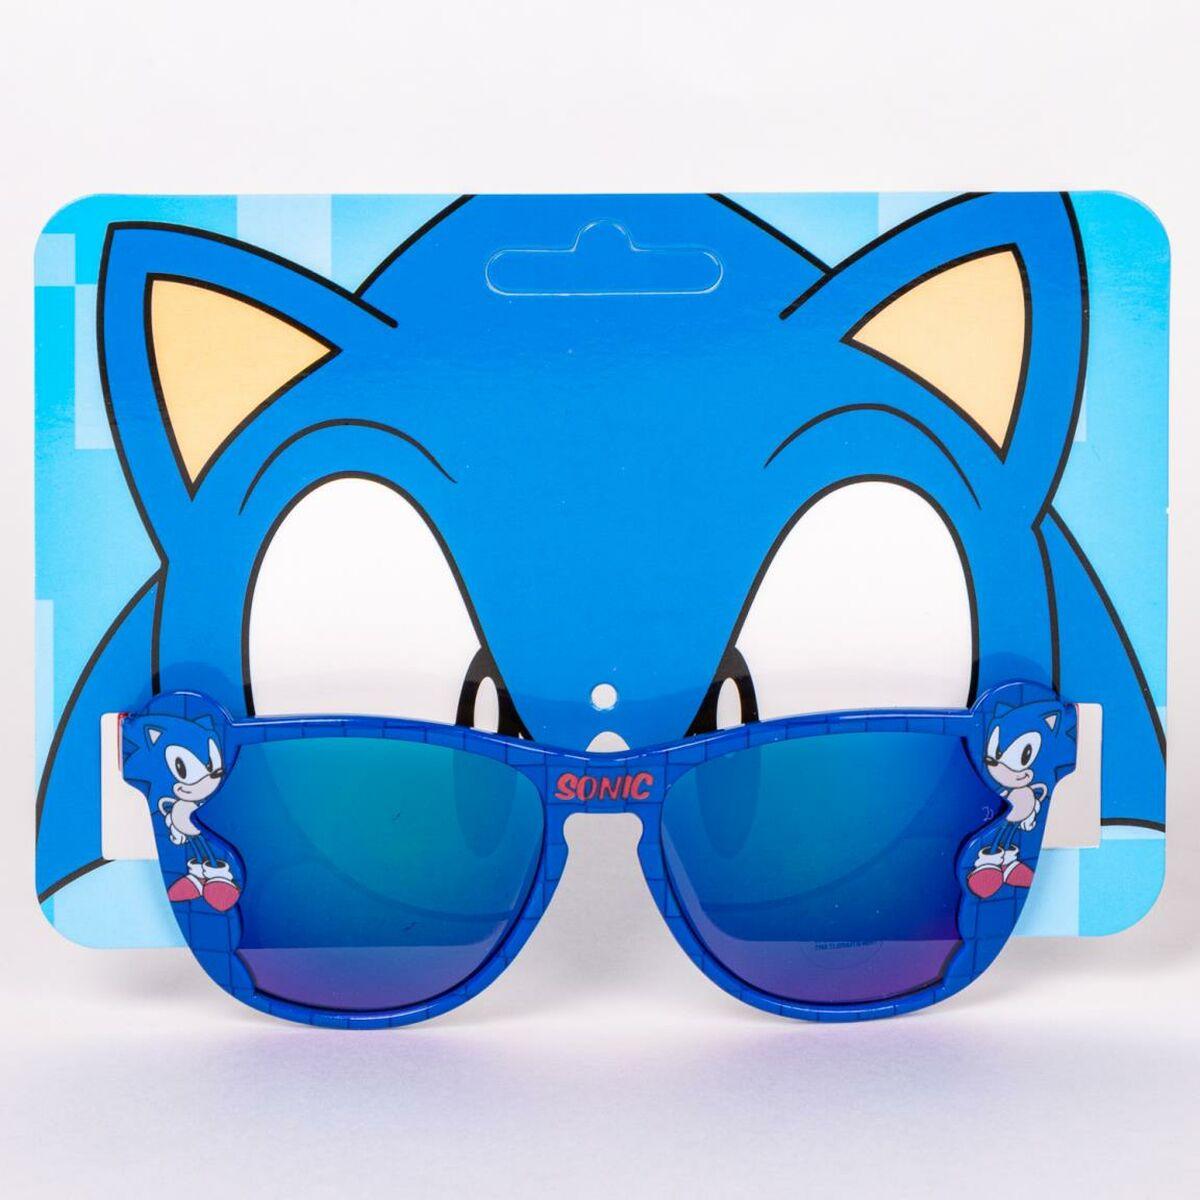 Solbriller til Børn Sonic Blå